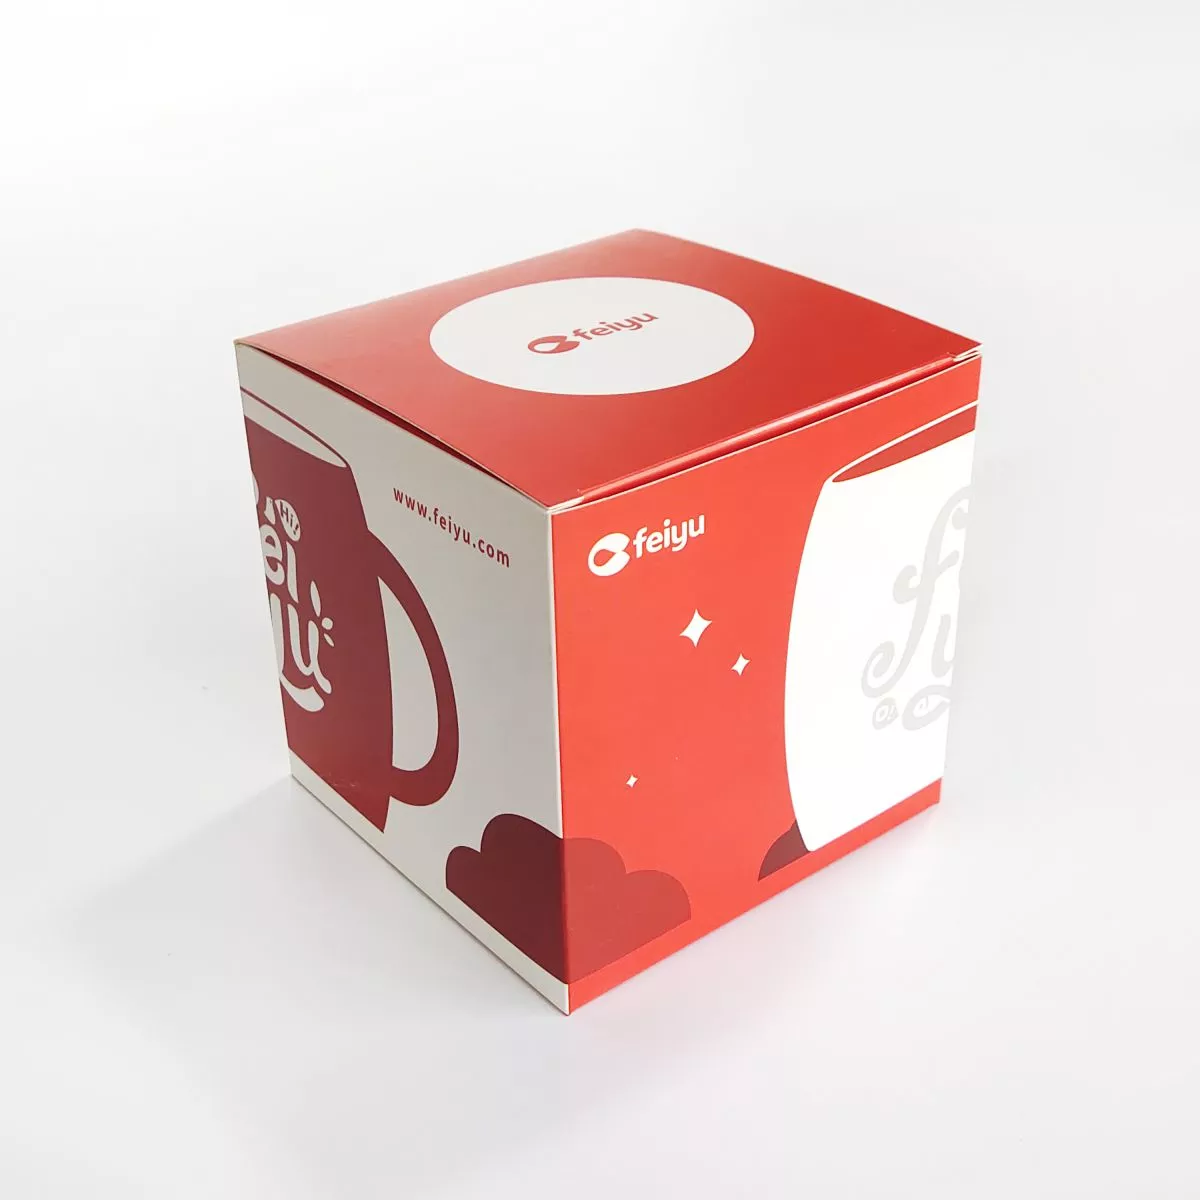 PB036 Coffee Mug Box